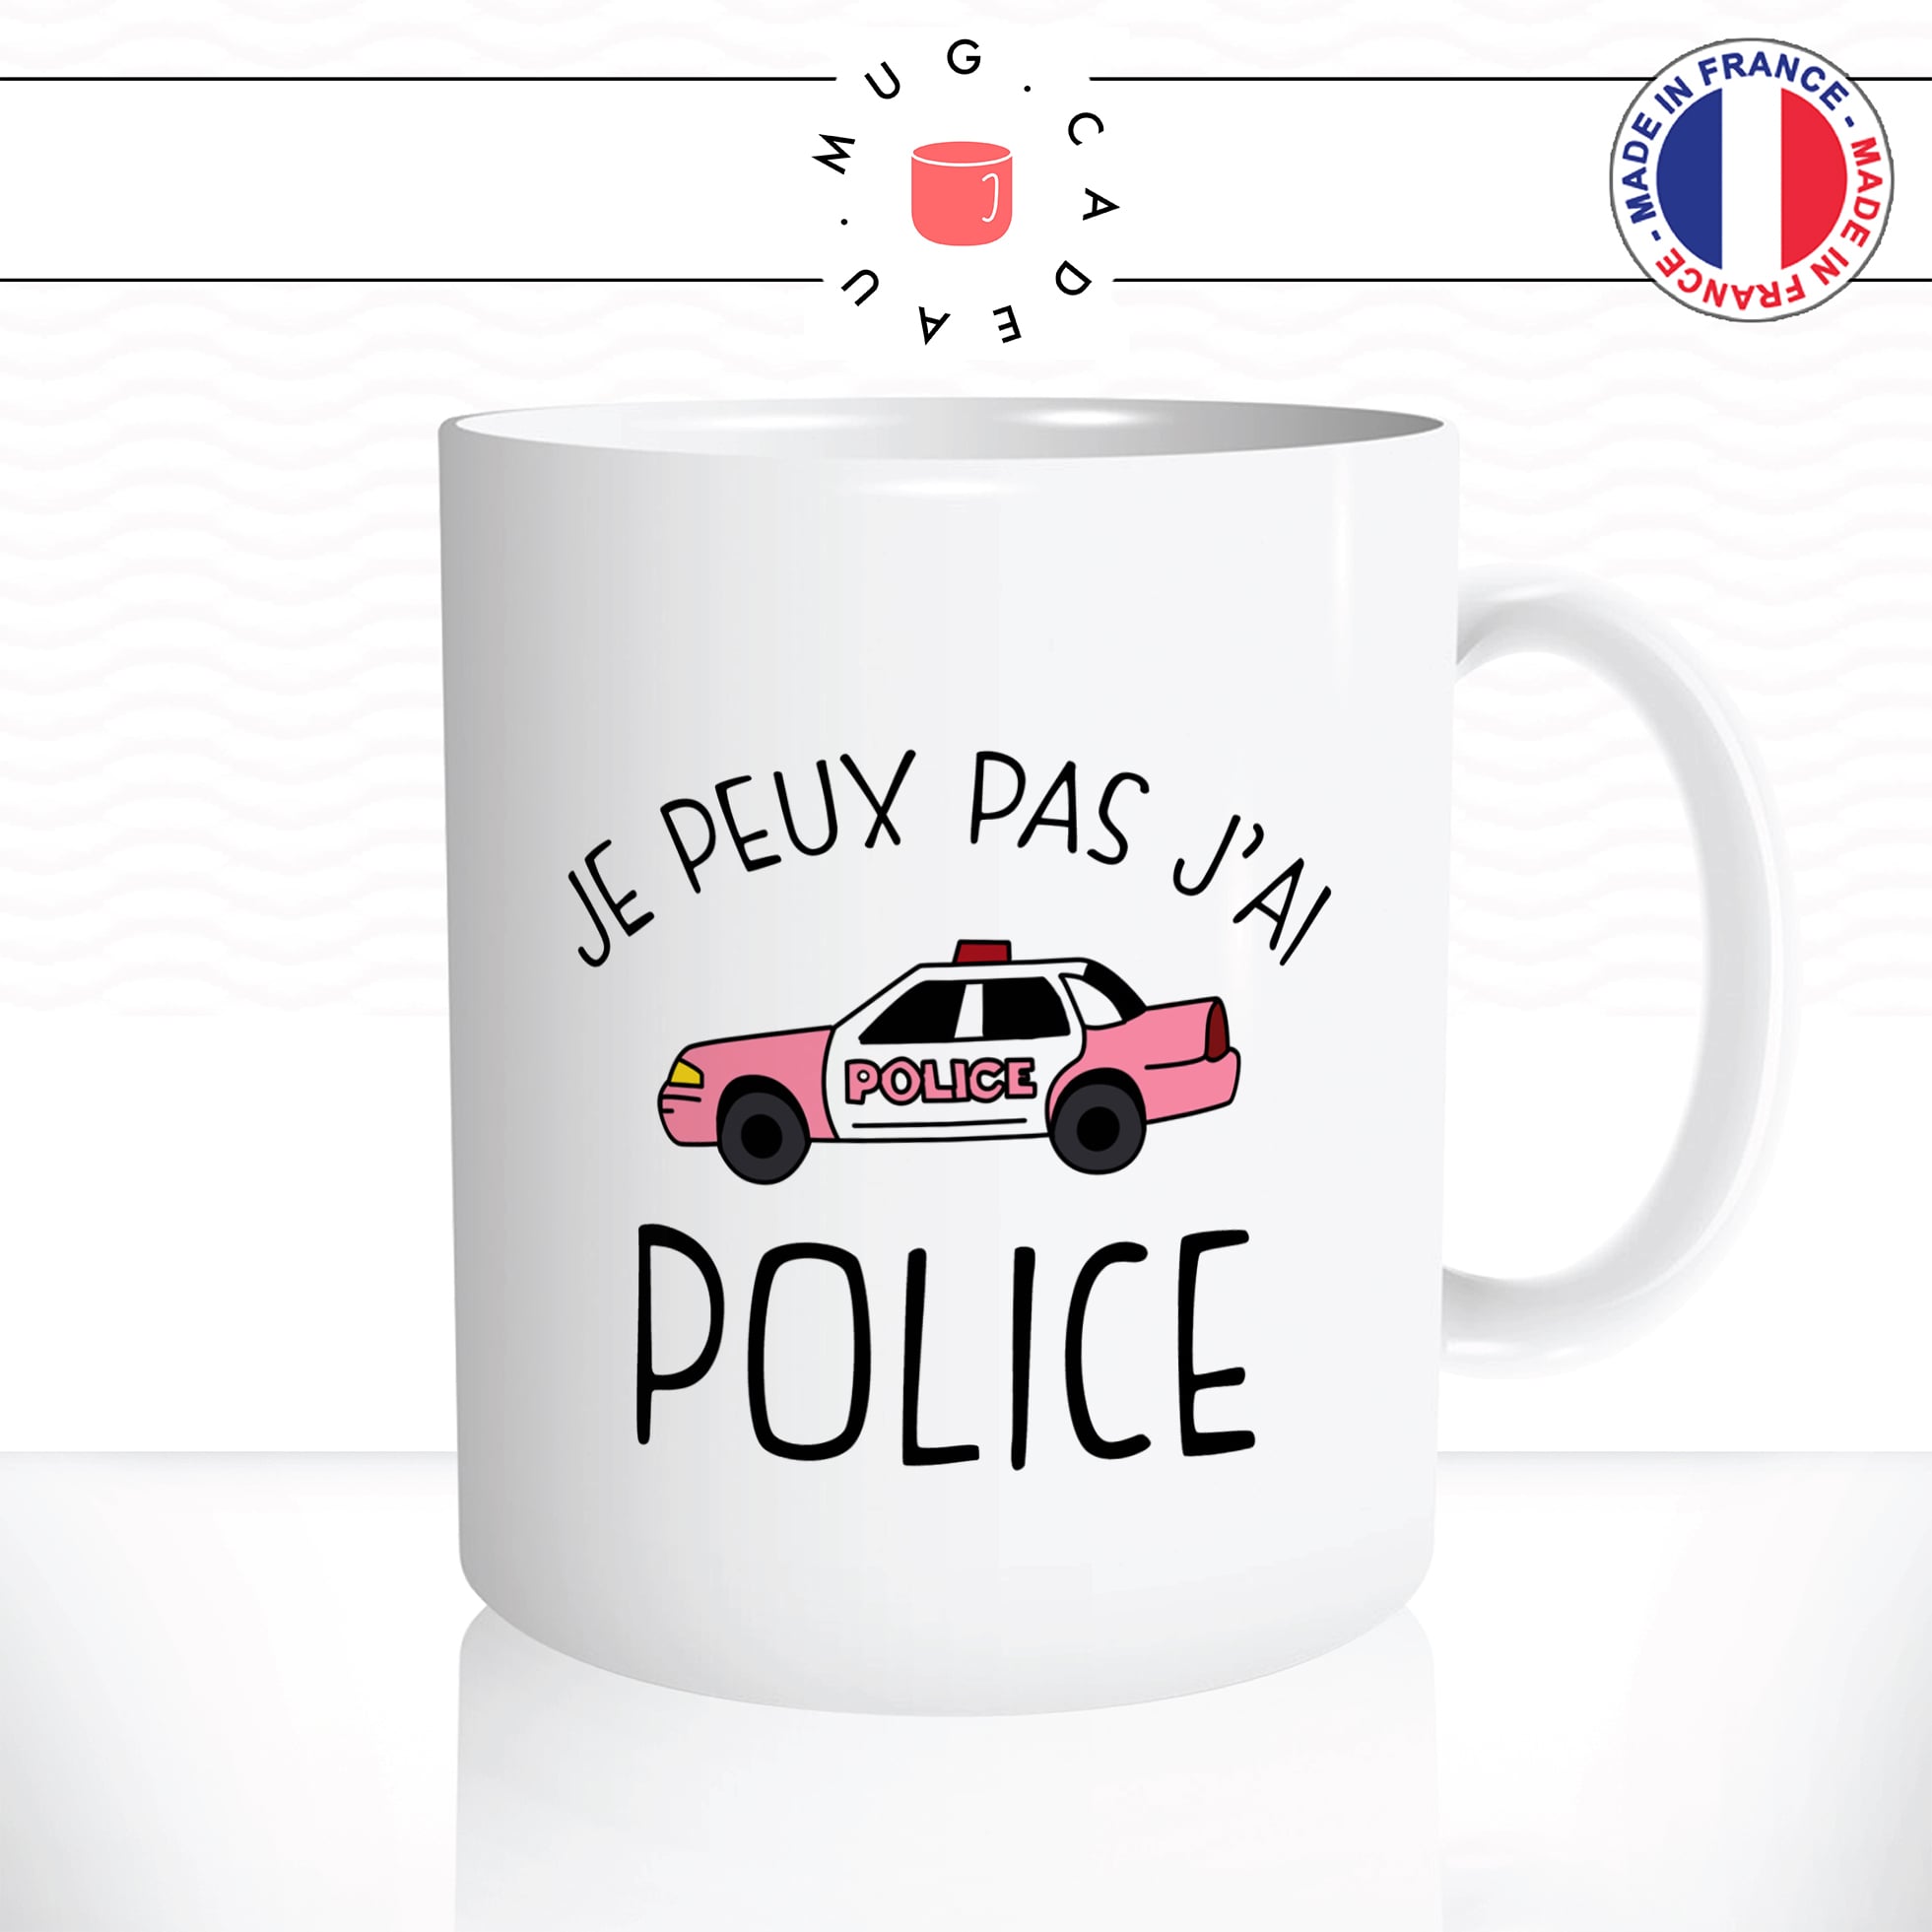 mug-tasse-je-peux-pas-jai-police-voiture-rose-femme-boulot-metier-policiere-travail-idée-cadeau-original-fun-café-thé-tasse-personnalisée2-min